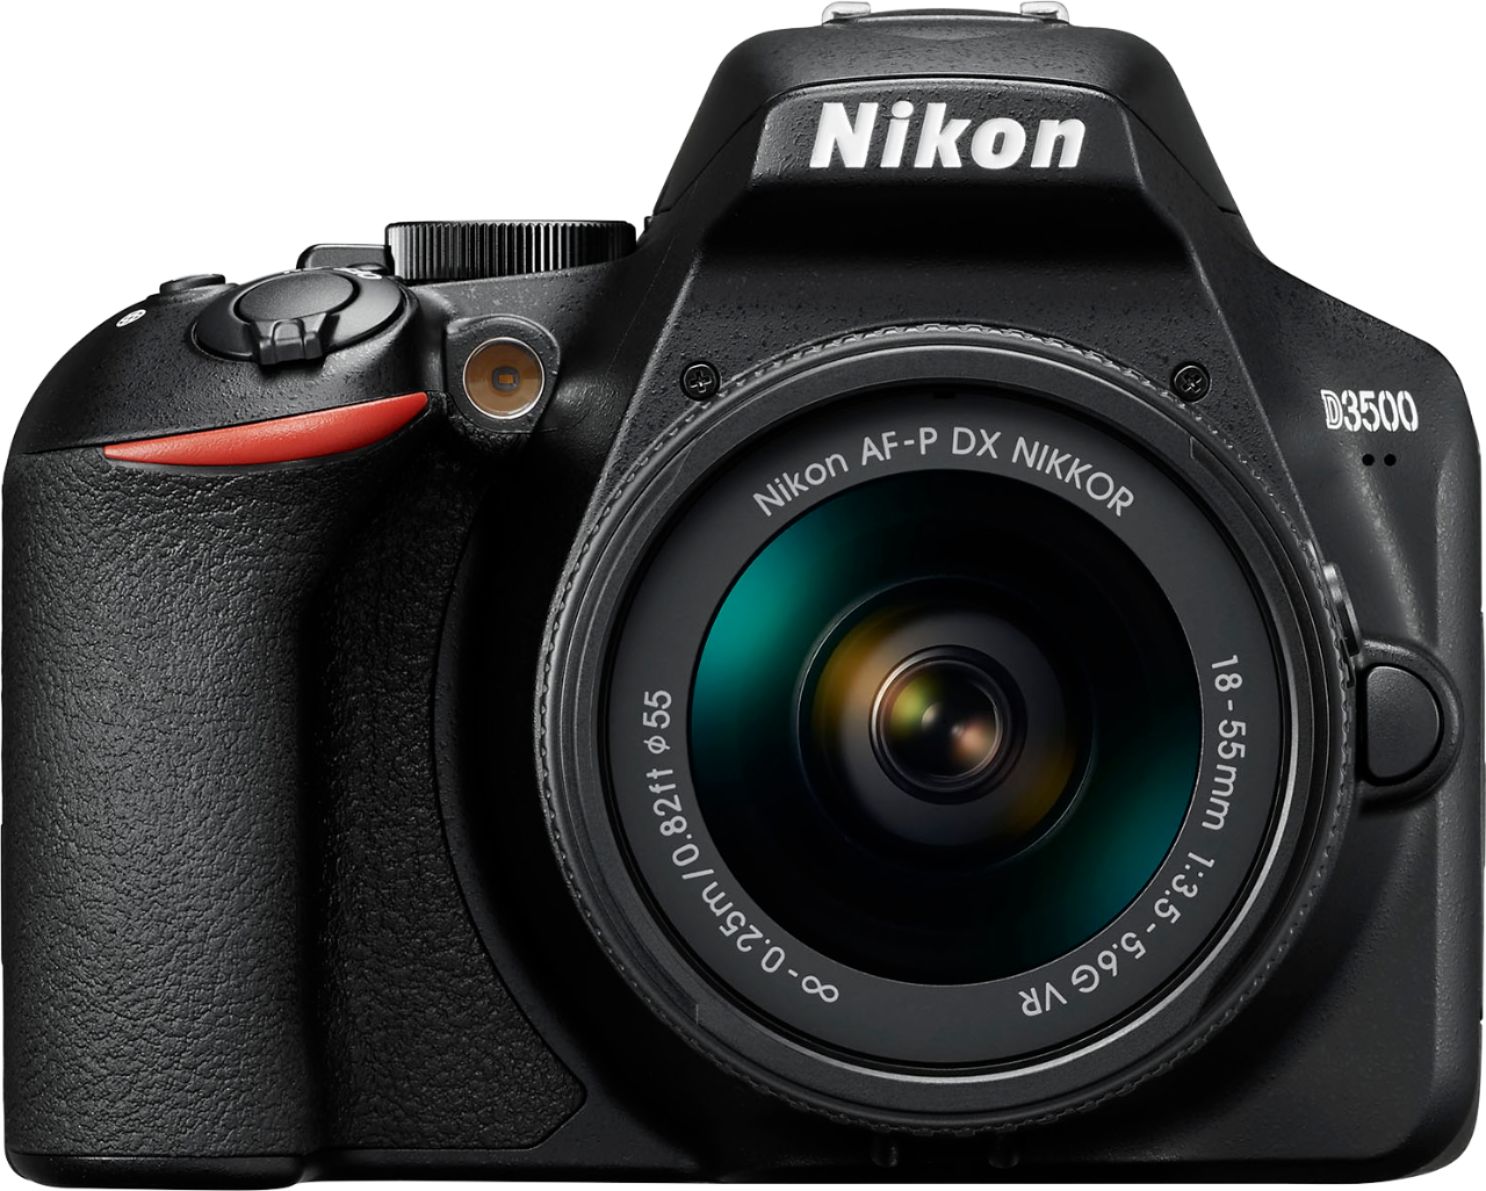 artillery crack Receiver Nikon D3500 DSLR Video Camera with AF-P DX NIKKOR 18-55mm f/3.5-5.6G VR  Lens Black 1590 - Best Buy